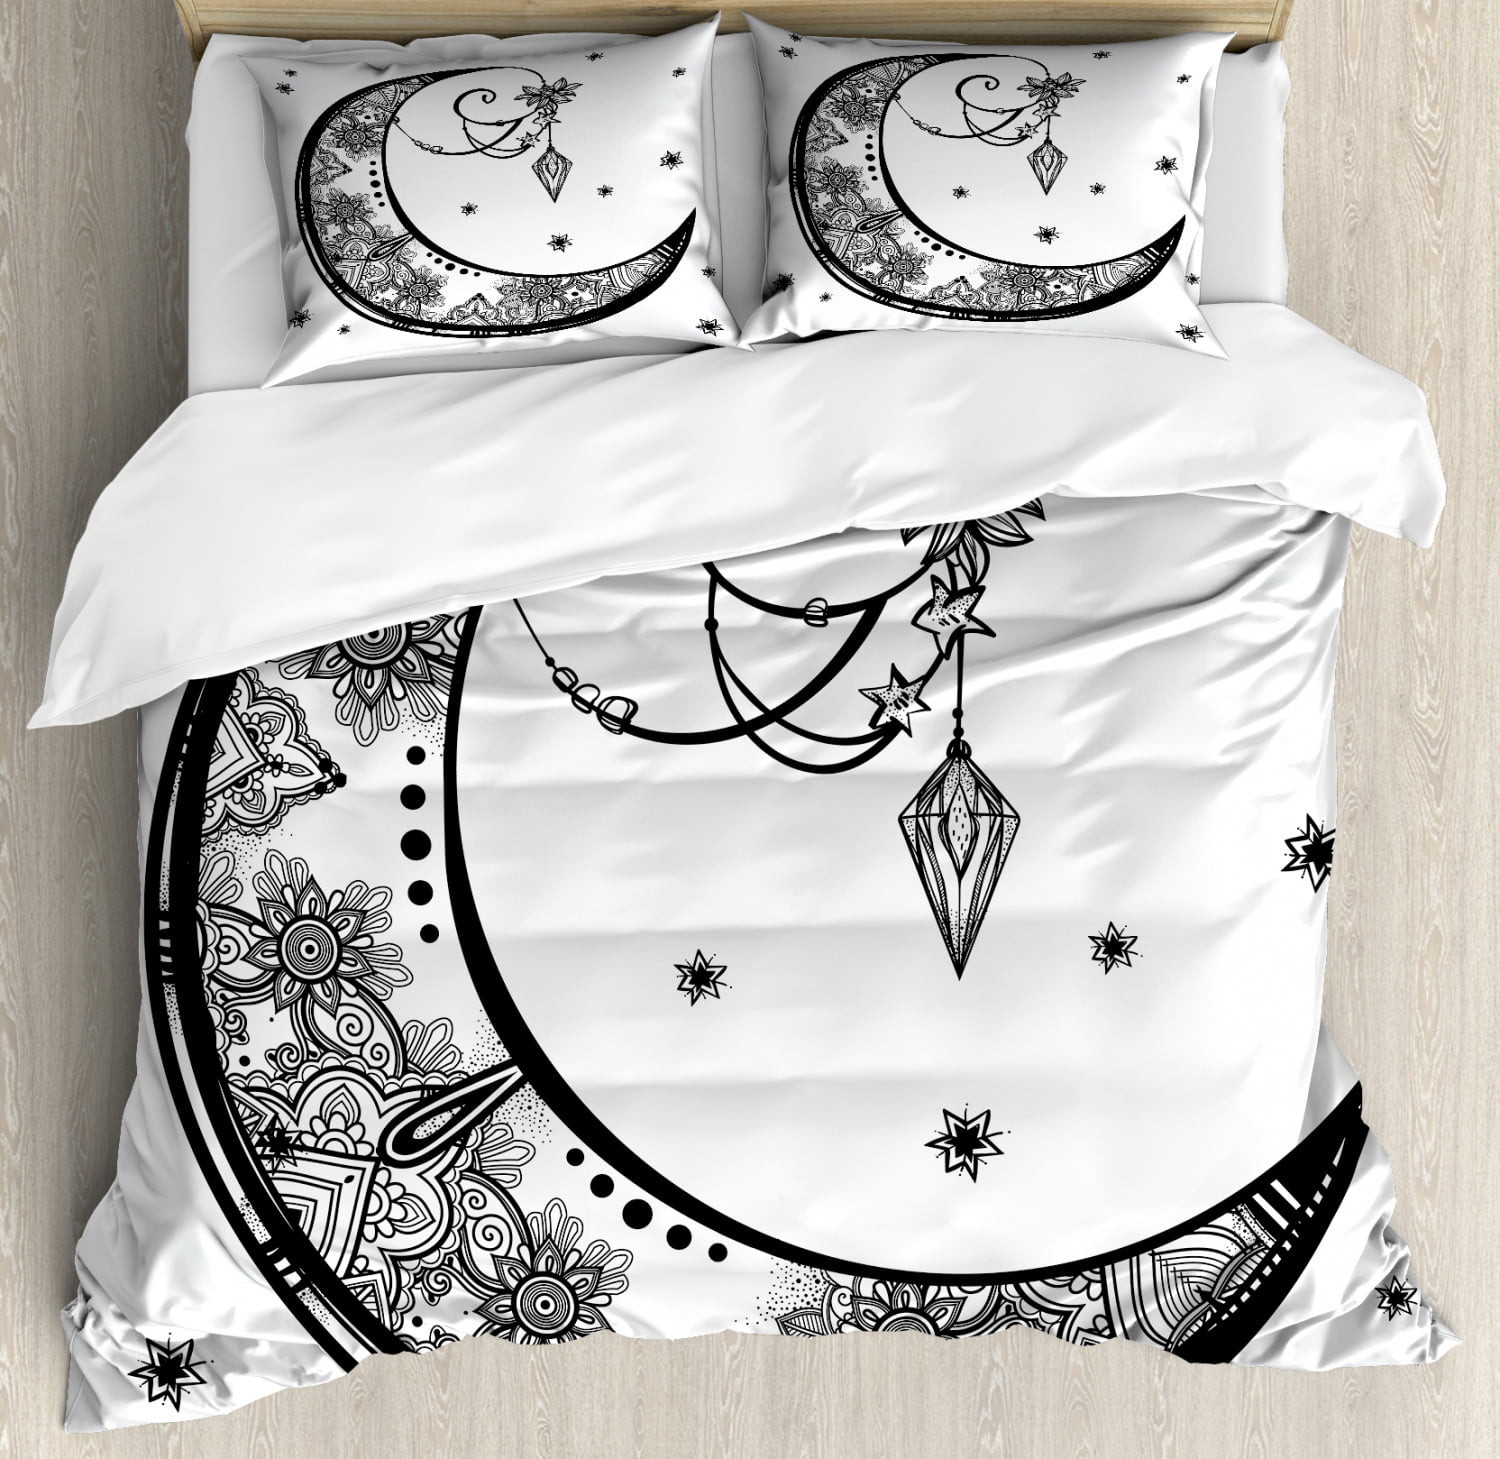 Dreamcatcher Bedding Set Feathers Duvet Cover Astrology Bed Set Bedclothes 3pcs 